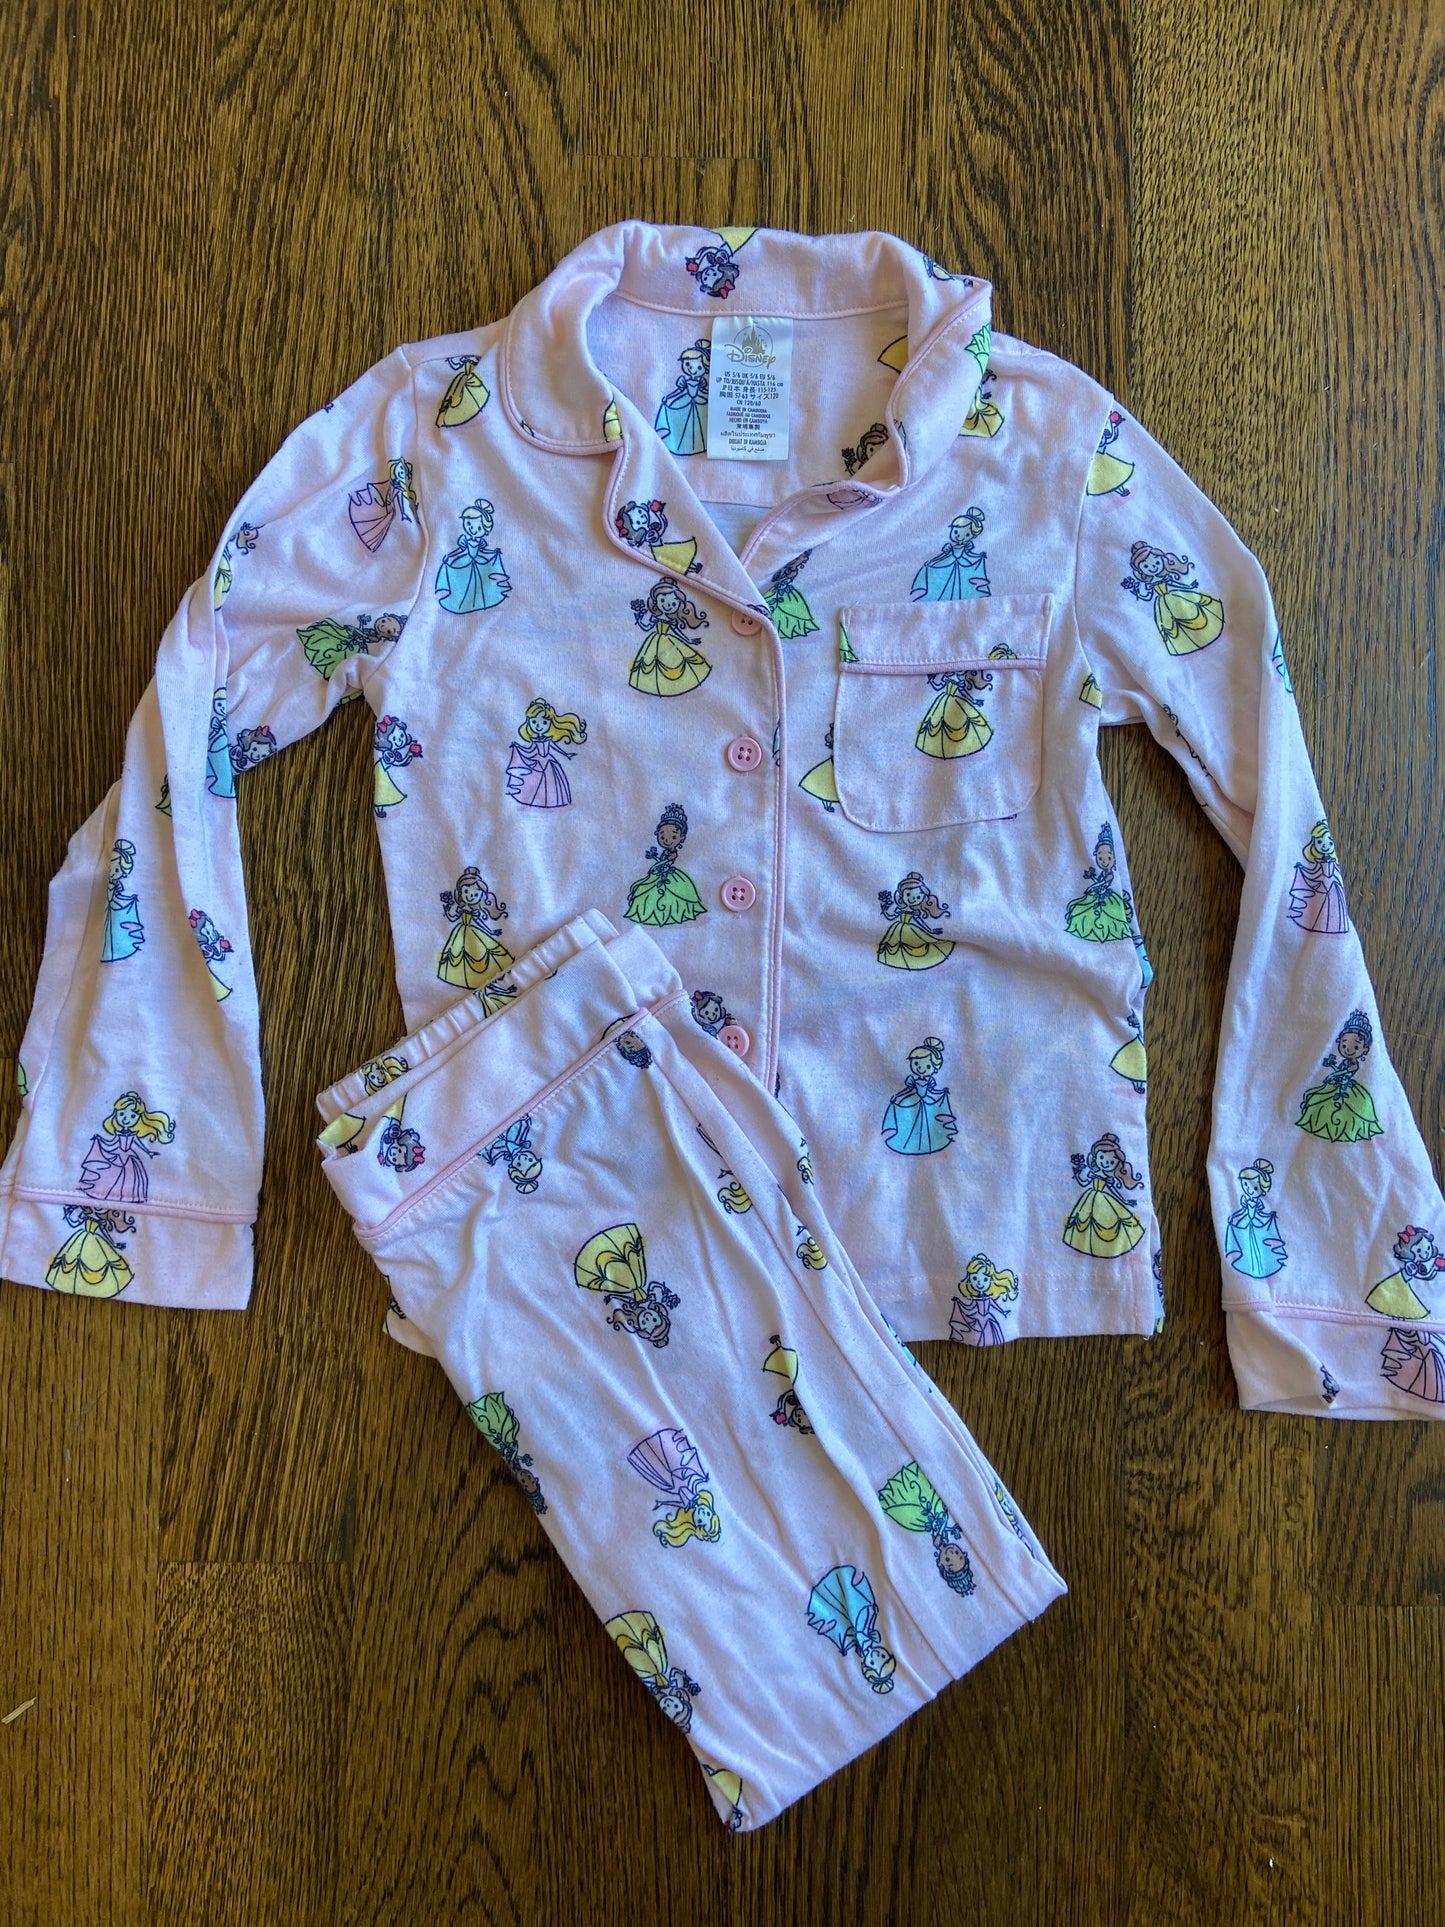 Girk's Disney Princess Pajamas Size 5/6